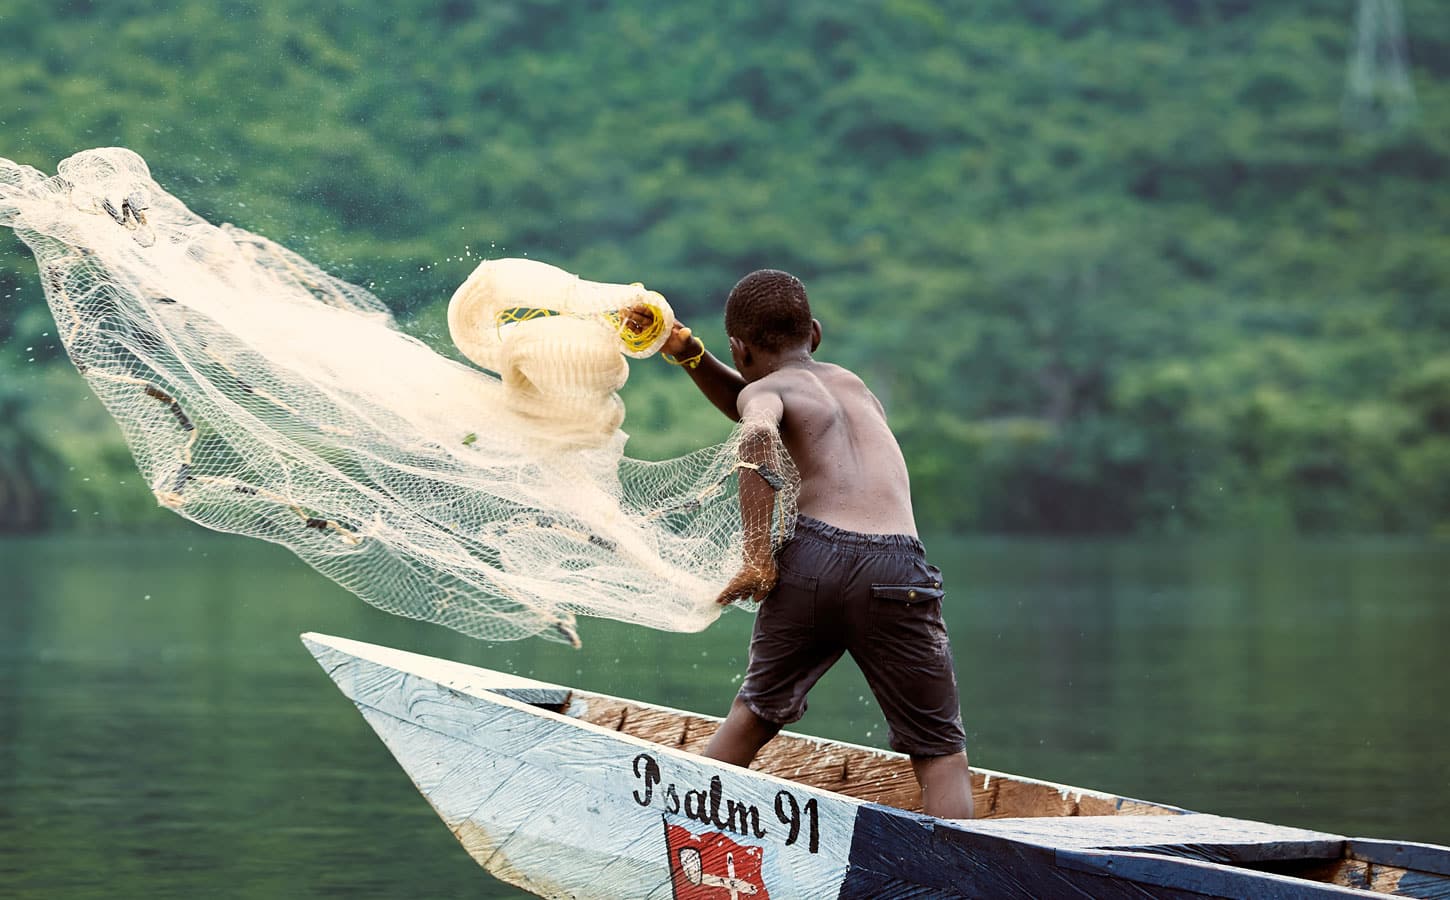 Gutt, med bar overkropp og shorts, står i en båt og kaster ut et garn. Foto: Henry KD